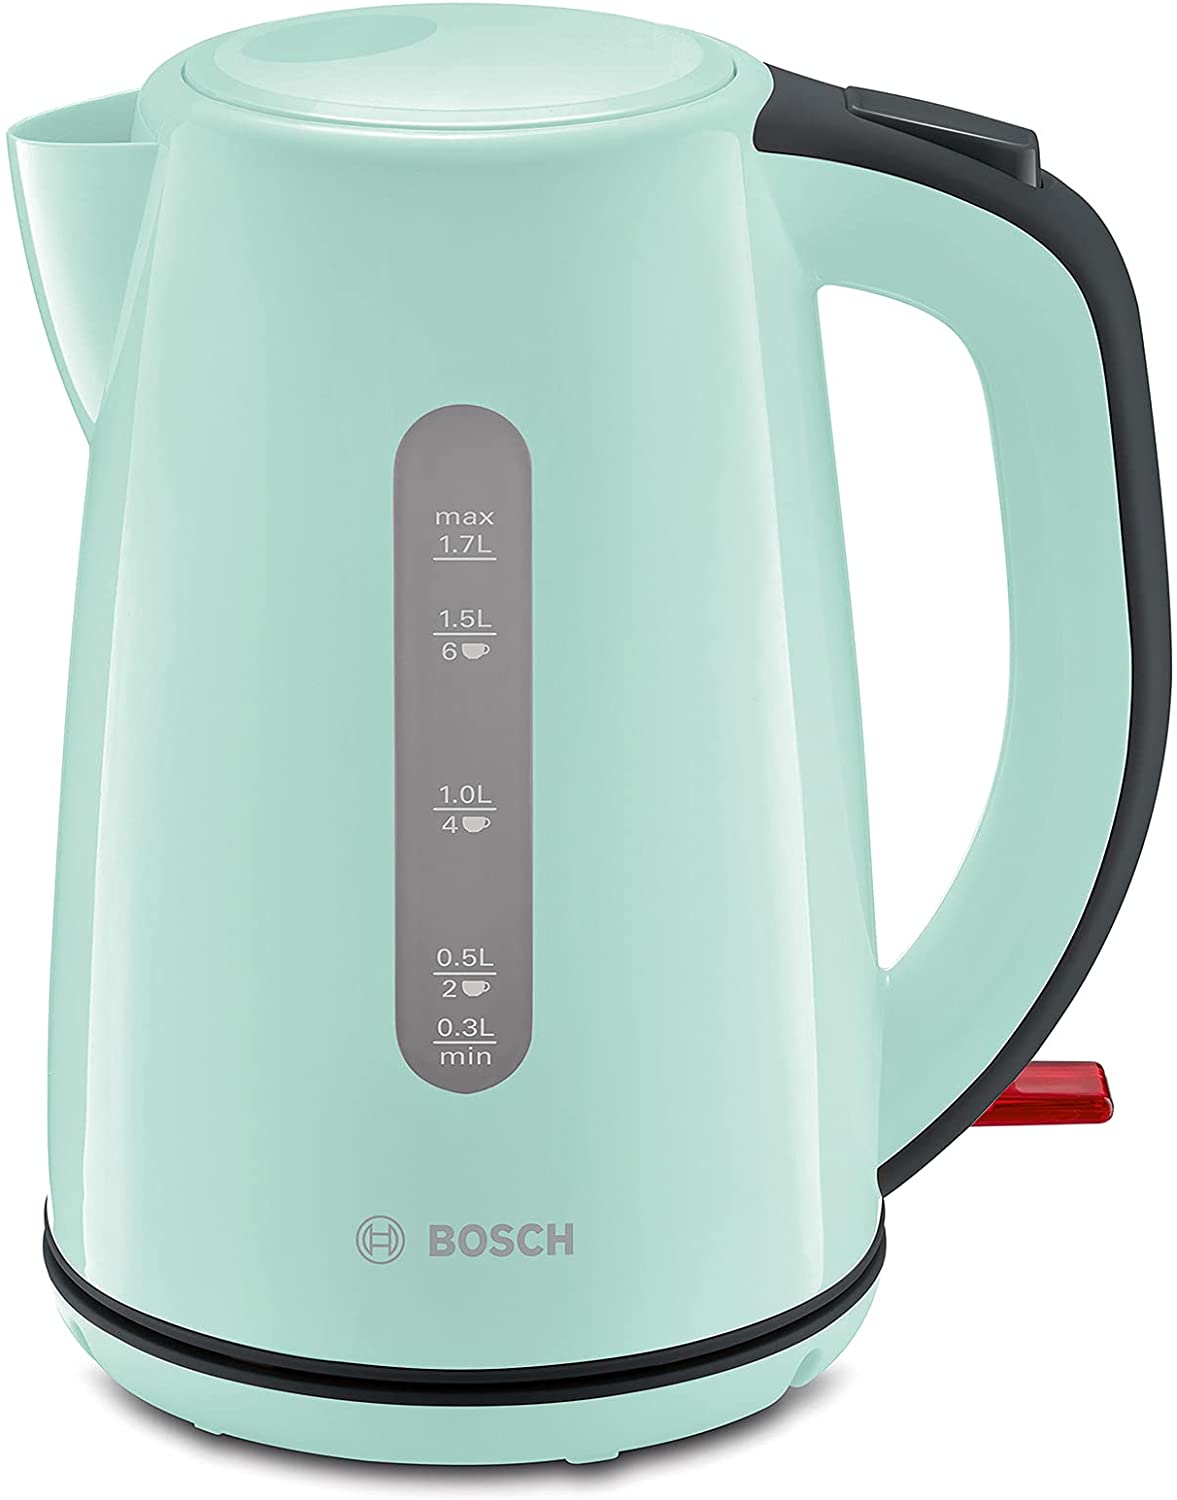 Bosch TWK7502 Cordless Kettle, 2200 W, Mint Turquoise / Black-Grey